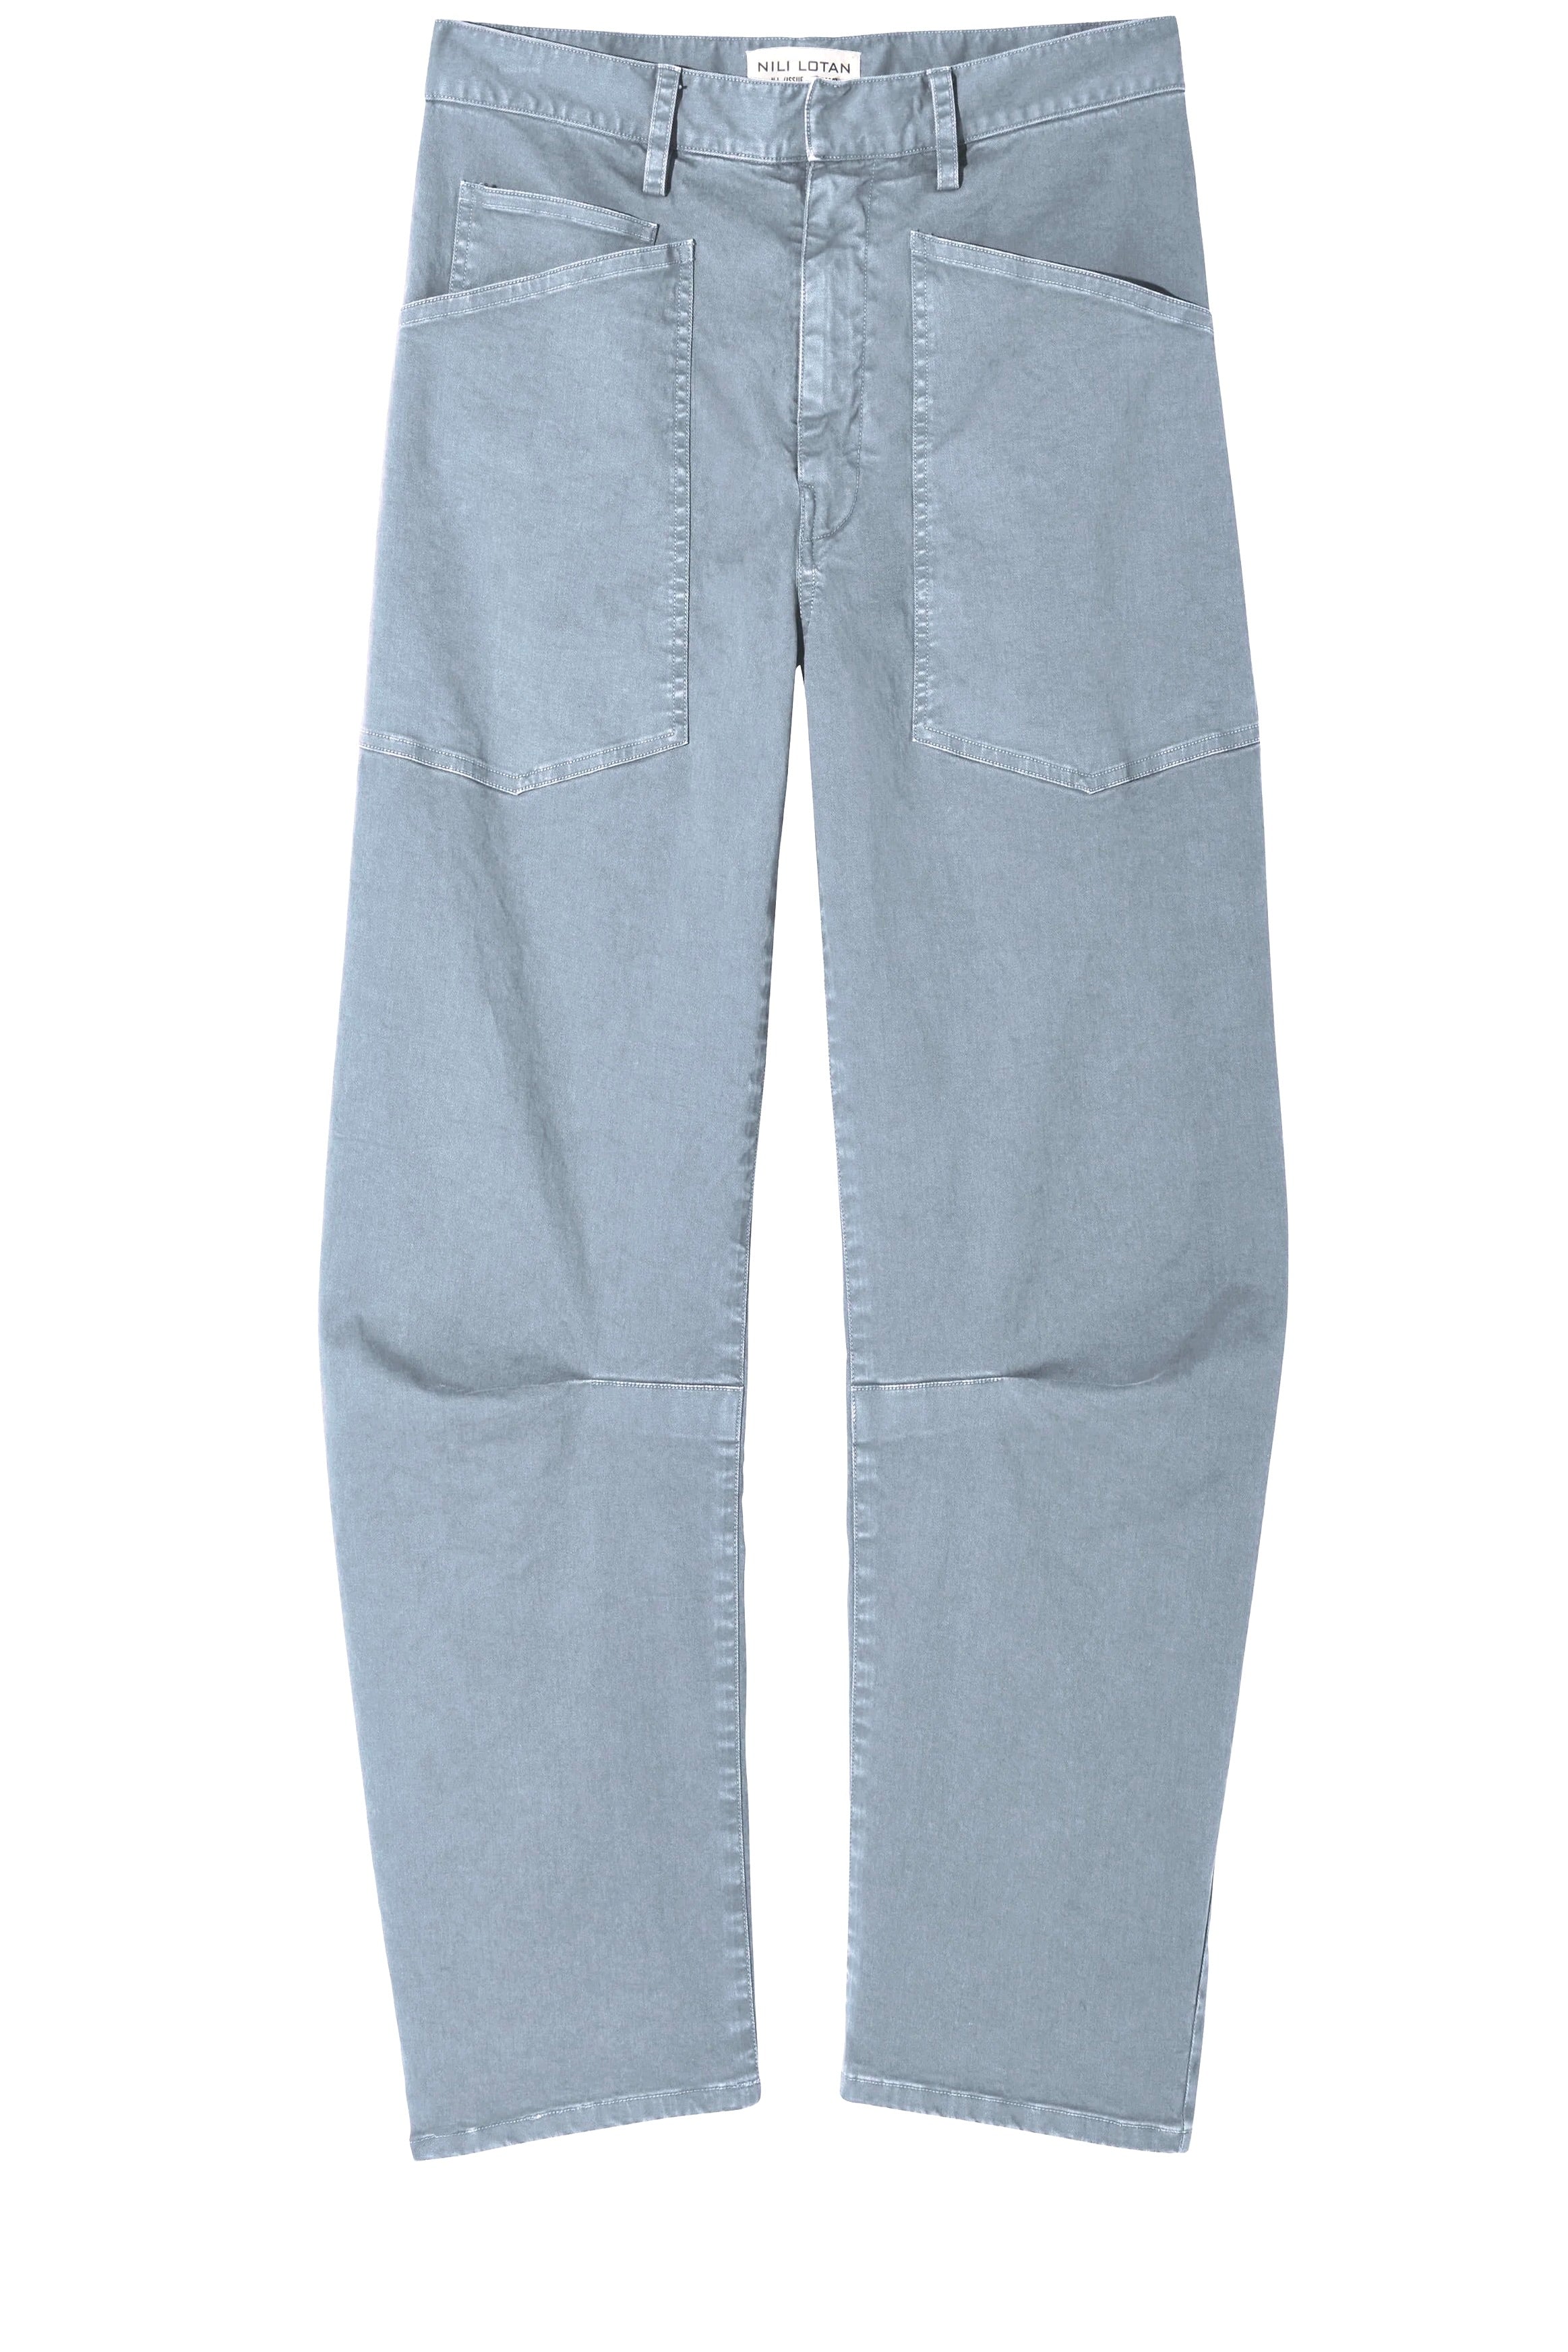 shon pants - vintage blue